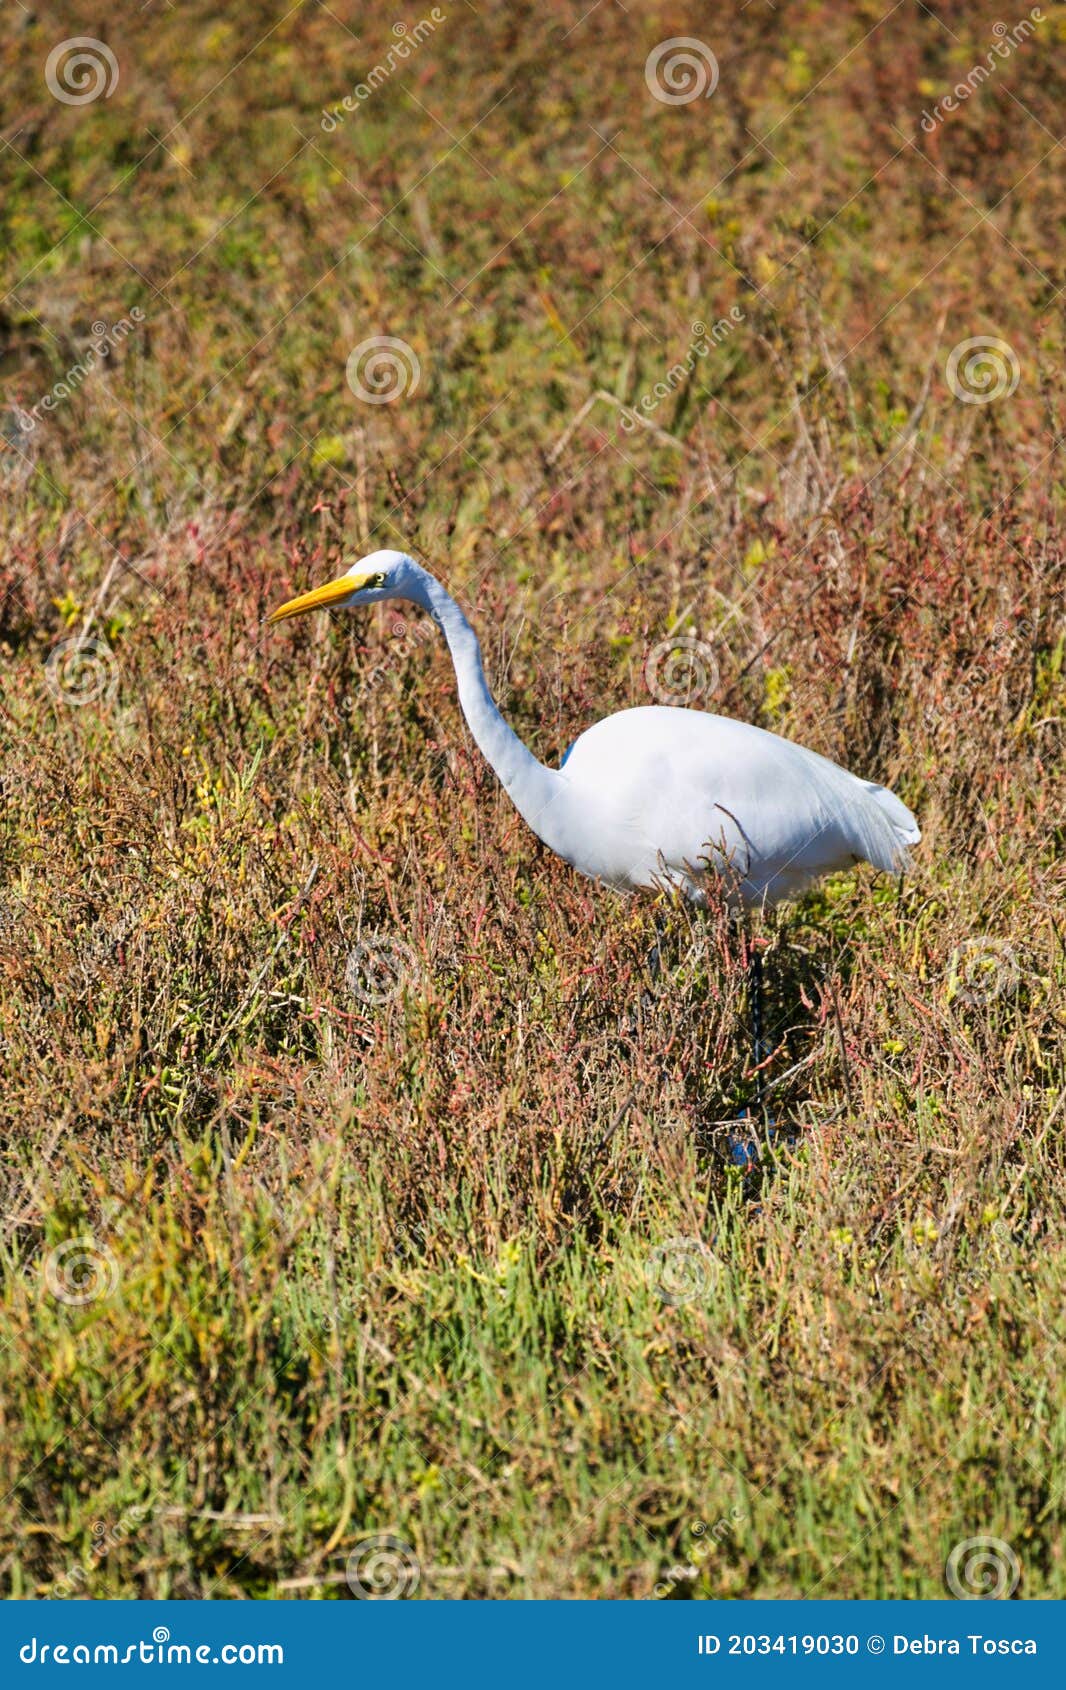 white crane bird bolsa chica ecological reserve